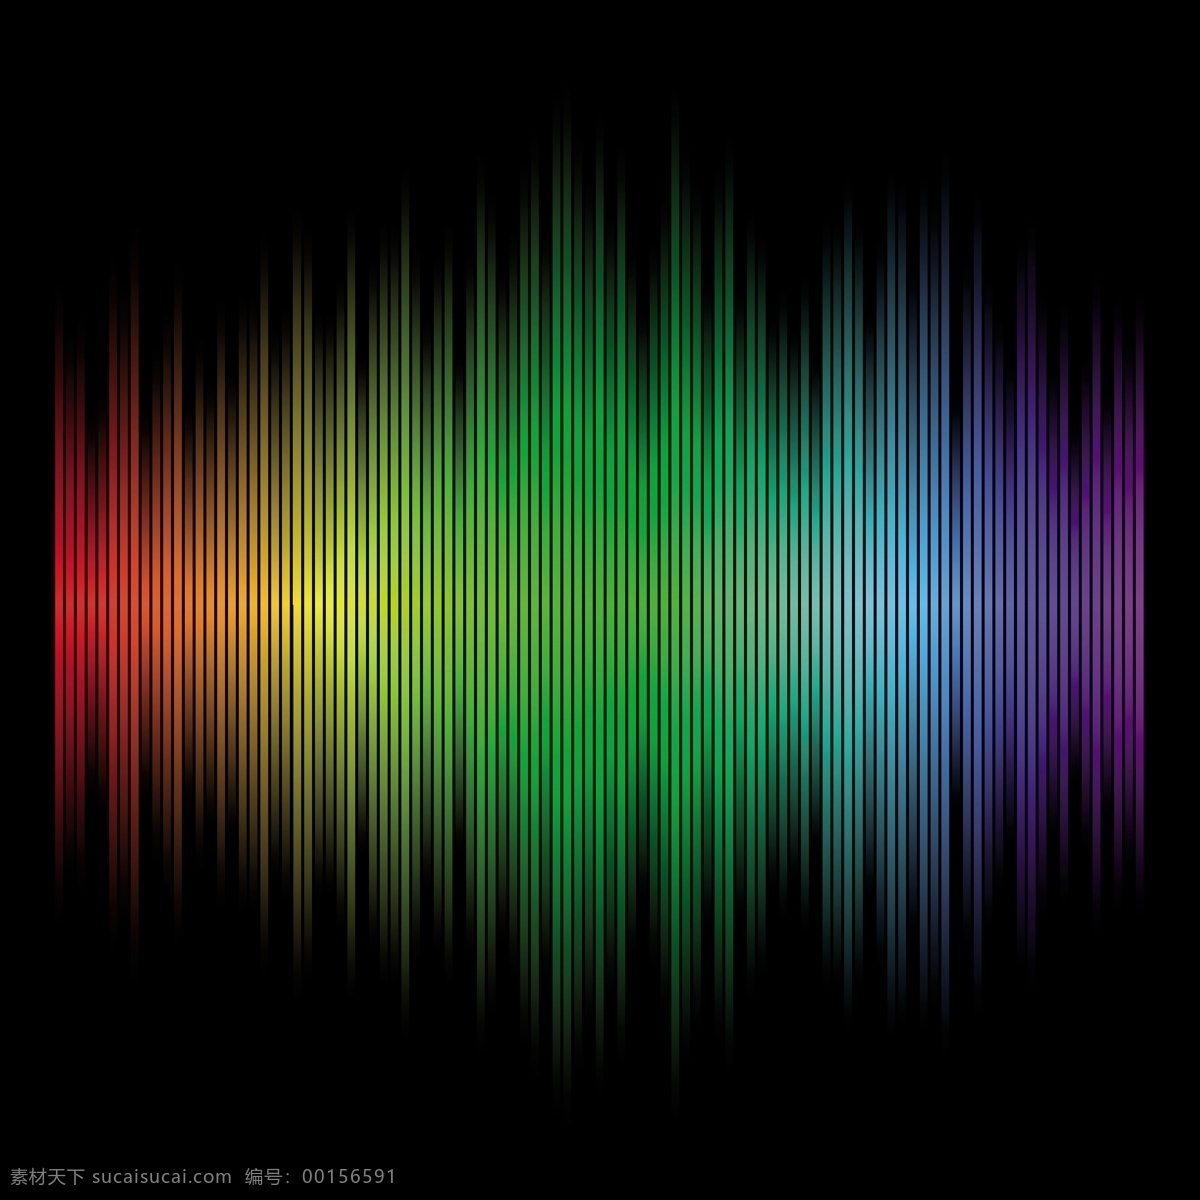 七彩 线条 音乐 光线 光谱 矢量 背景 矢量素材 背景素材 设计素材